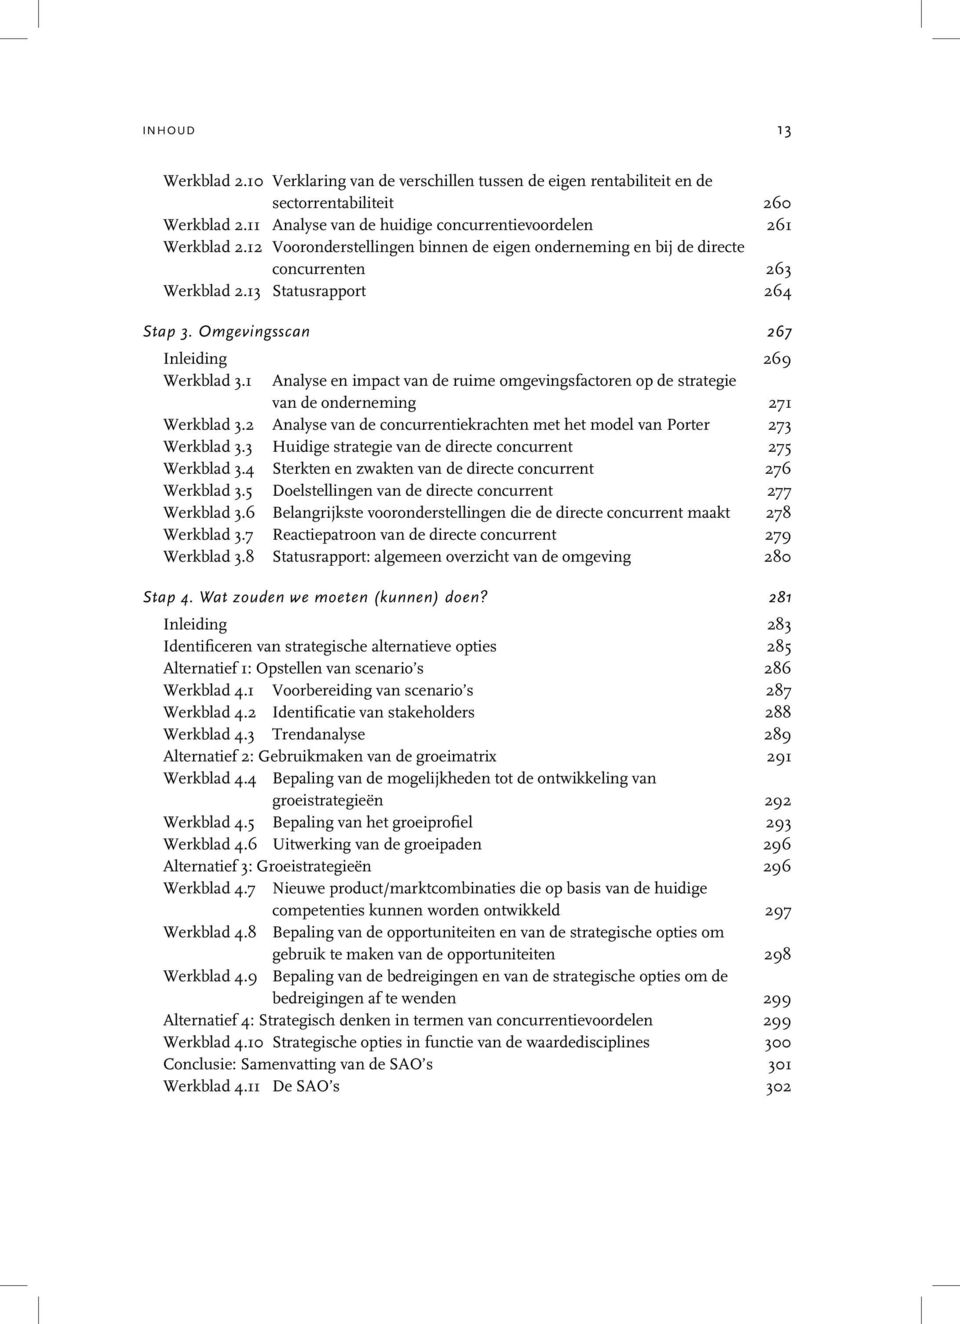 1 Analyse en impact van de ruime omgevingsfactoren op de strategie van de onderneming 271 Werkblad 3.2 Analyse van de concurrentiekrachten met het model van Porter 273 Werkblad 3.